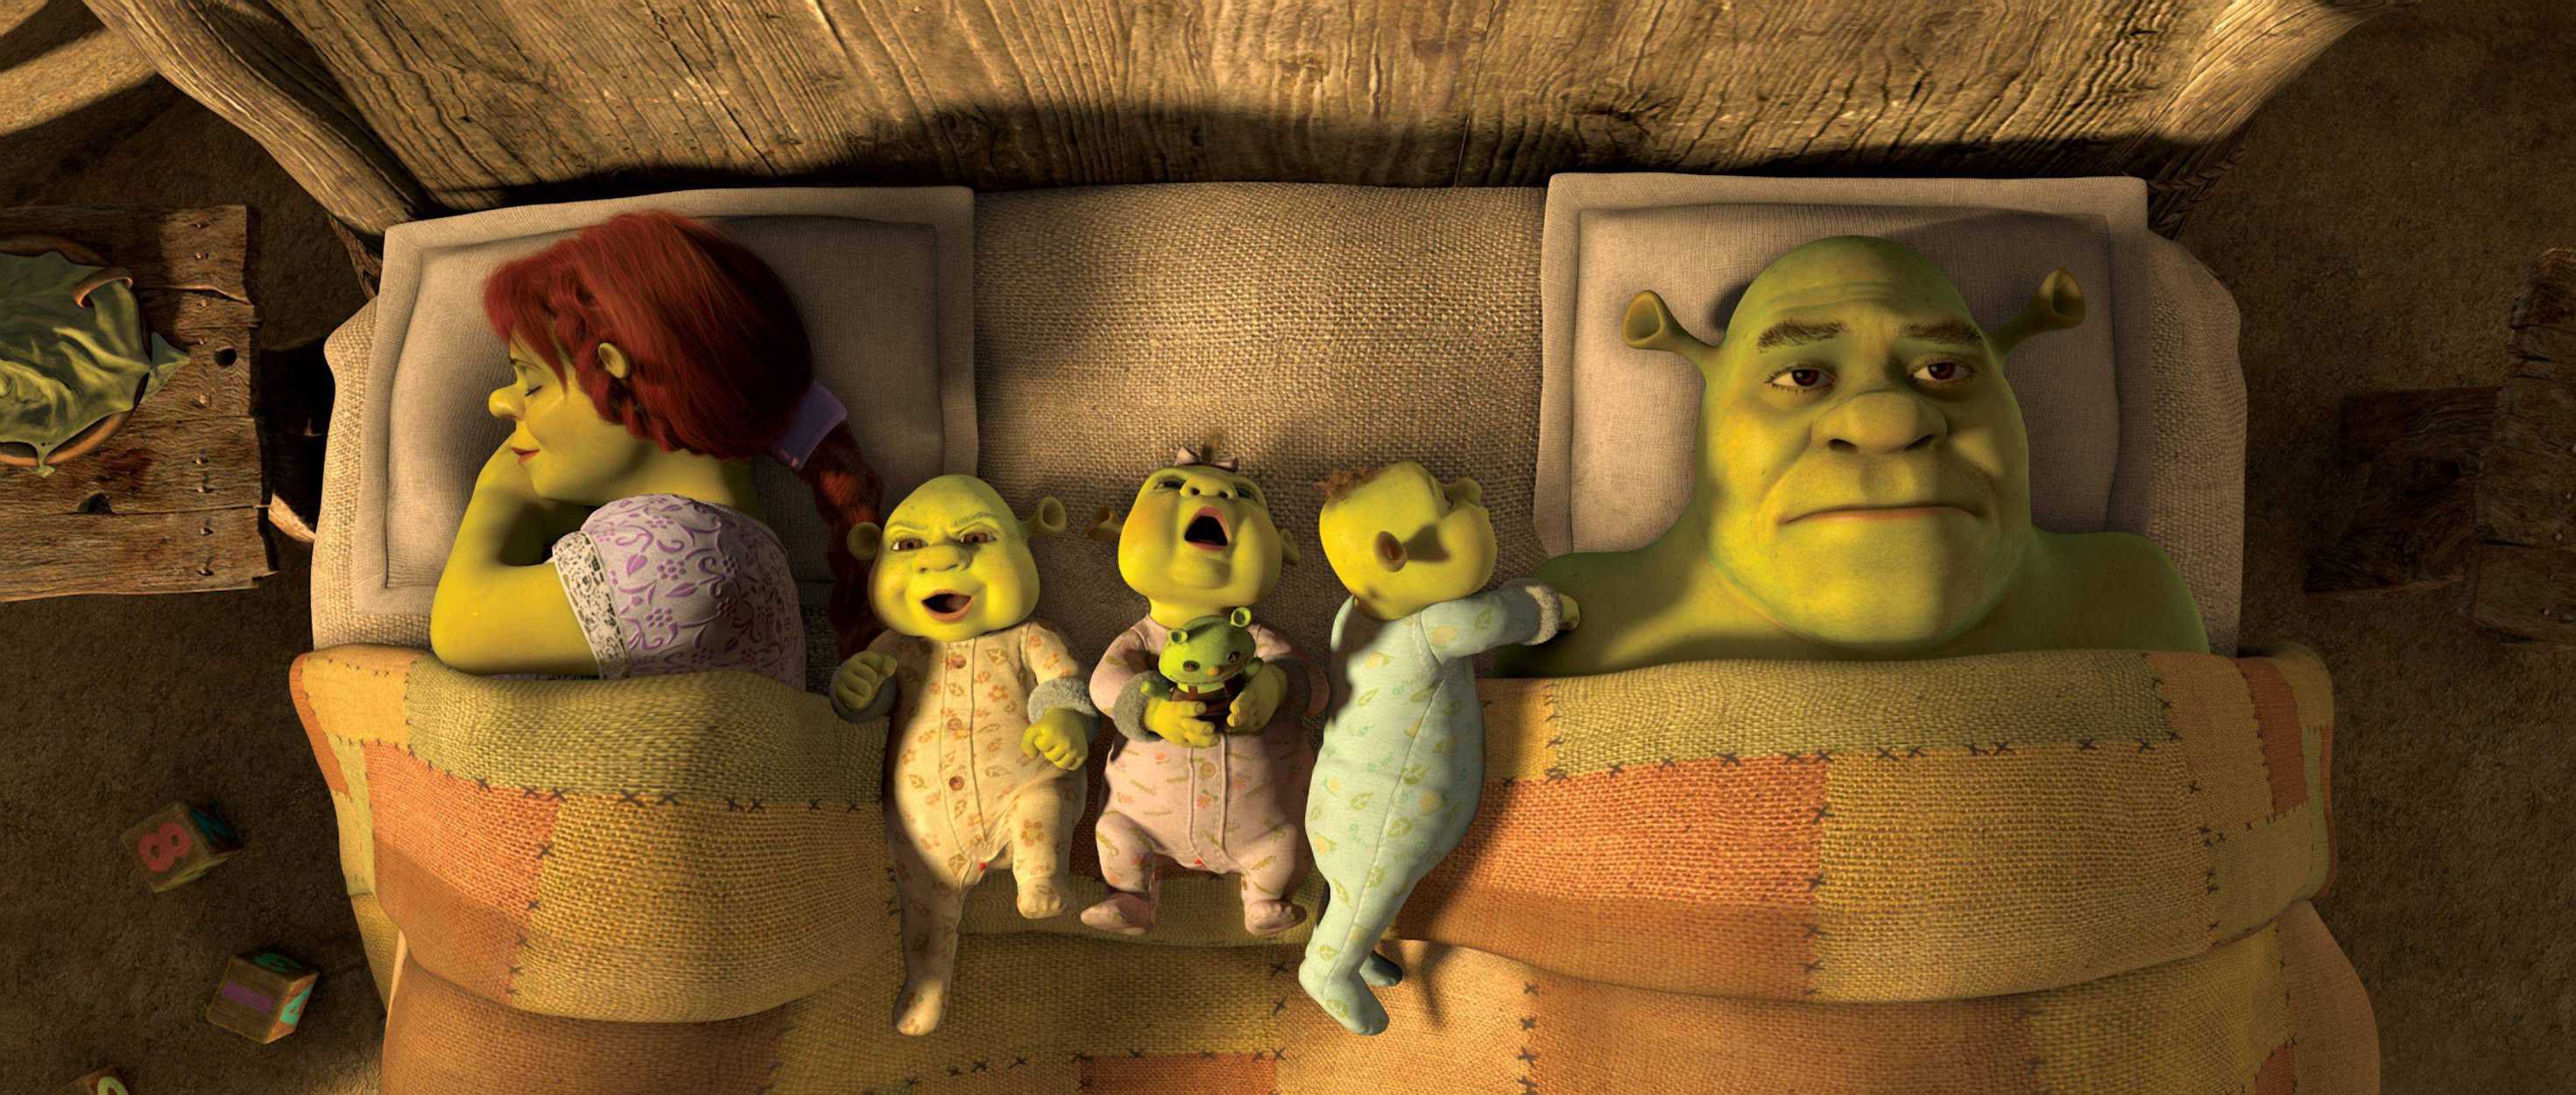 Shrek wallpaper. Shrek, Dreamworks animation, Animated characters